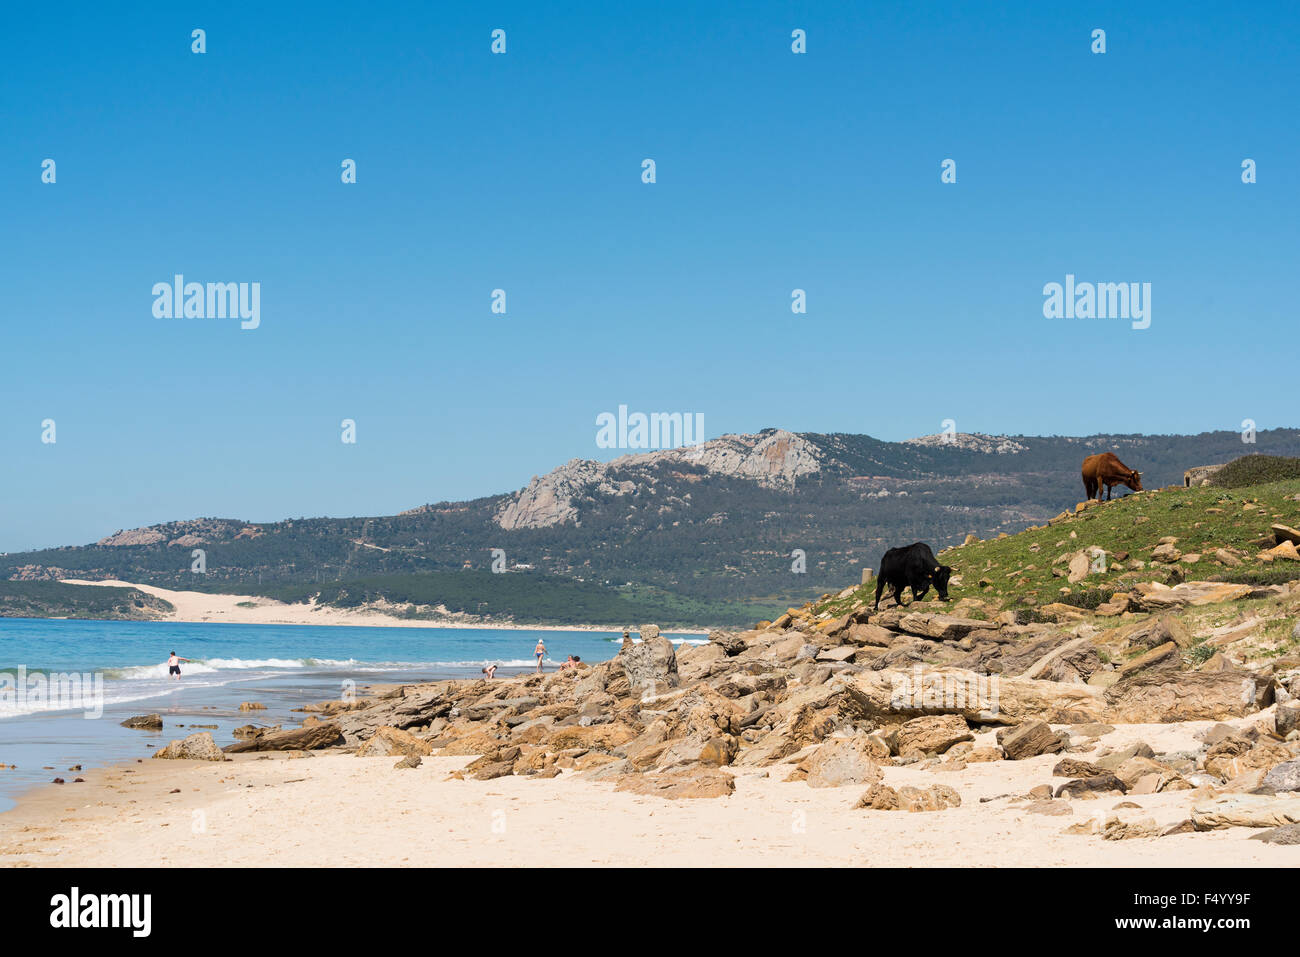 Bolonia beach with cows. Tarifa, Costa de la Luz, Cadiz, Andalusia, Southern Spain. Stock Photo